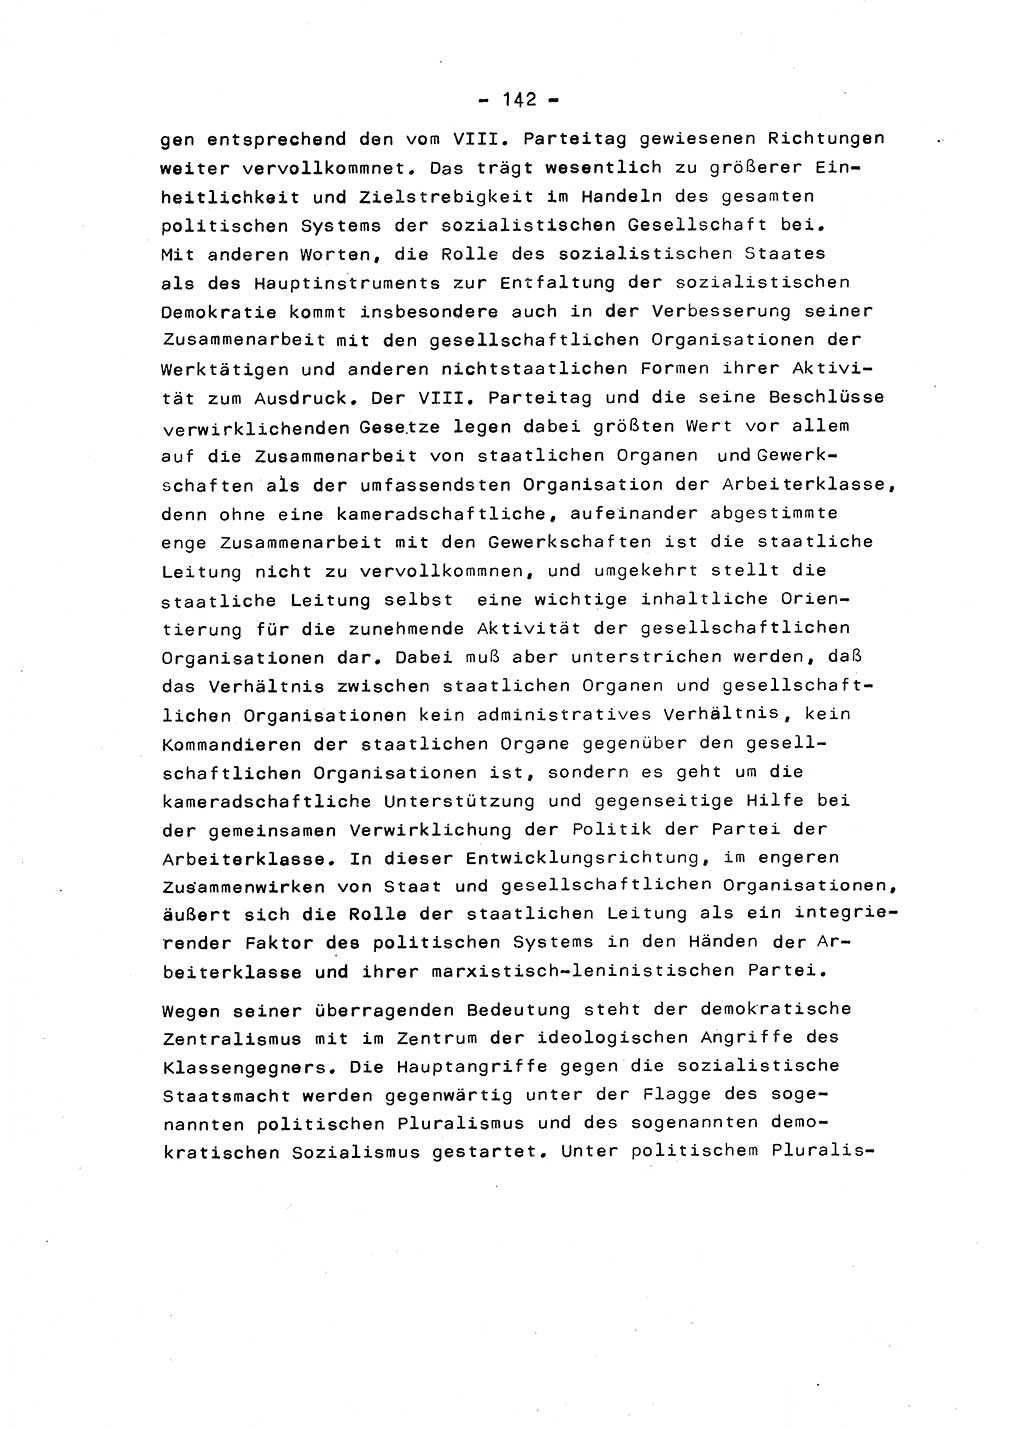 Marxistisch-leninistische Staats- und Rechtstheorie [Deutsche Demokratische Republik (DDR)] 1975, Seite 142 (ML St.-R.-Th. DDR 1975, S. 142)